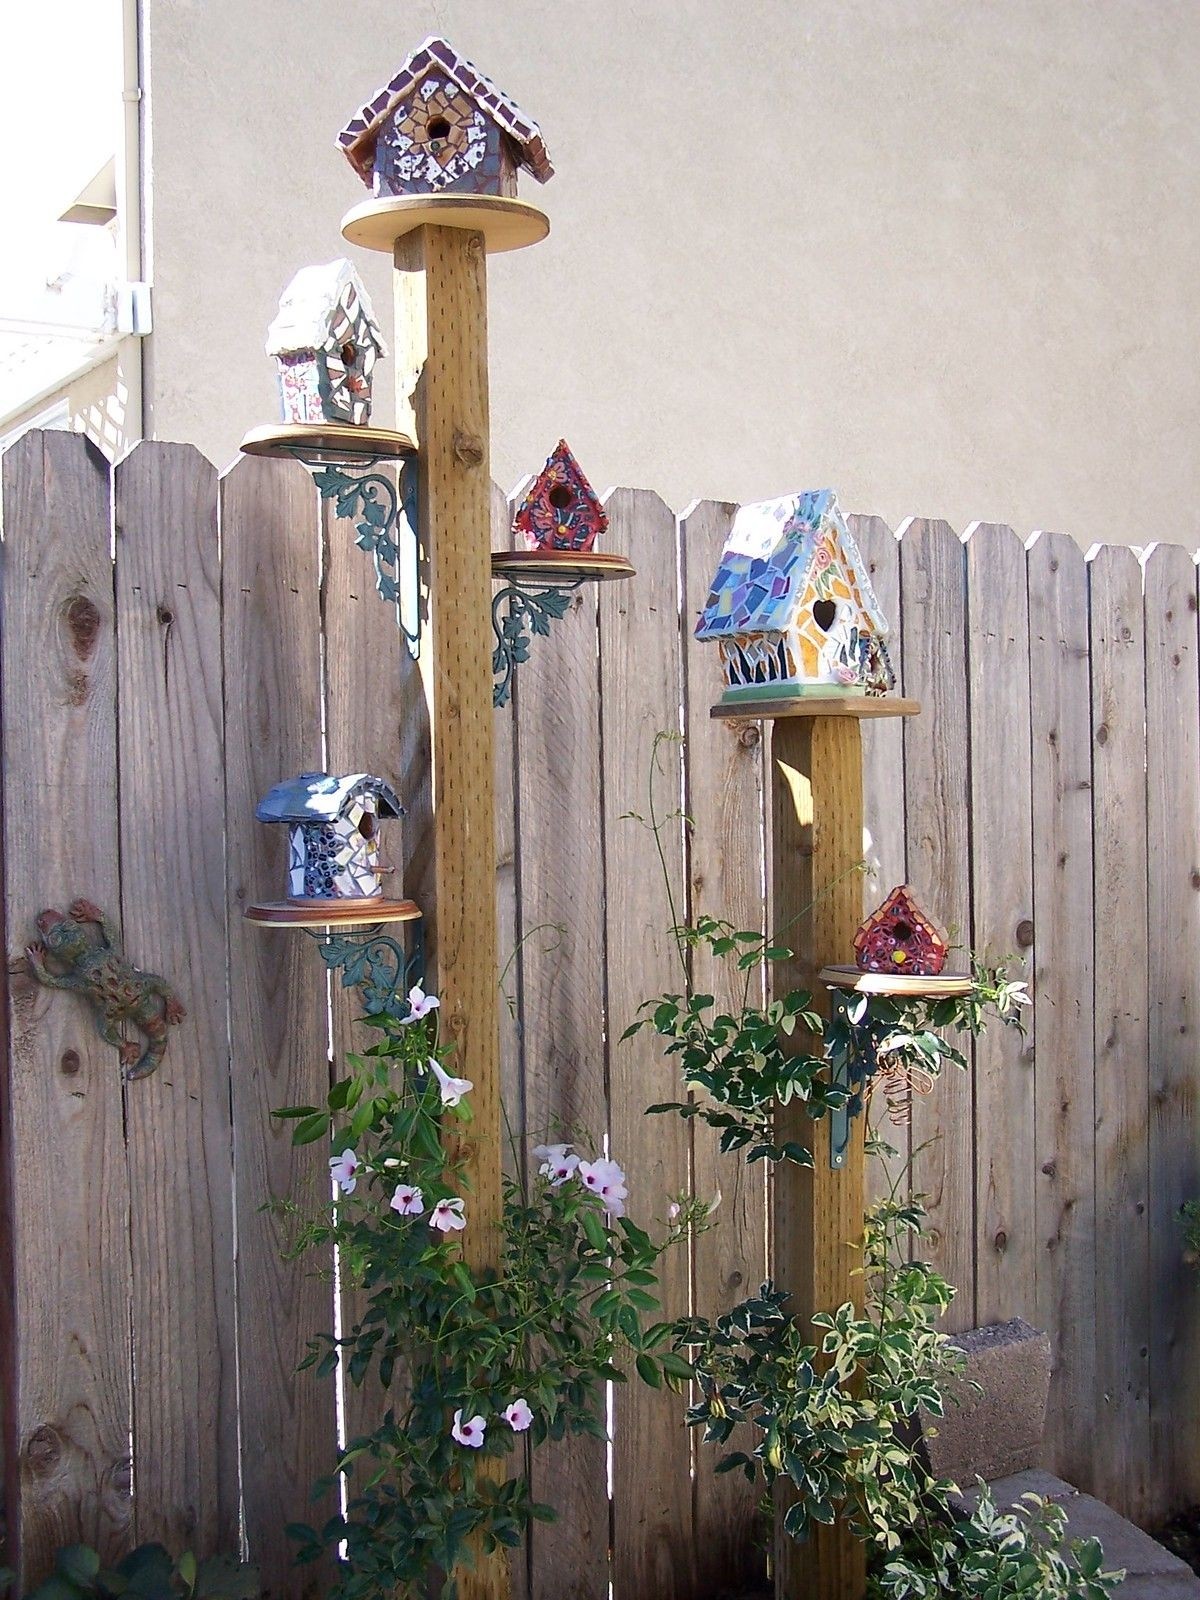 Wooden bird feeder stands